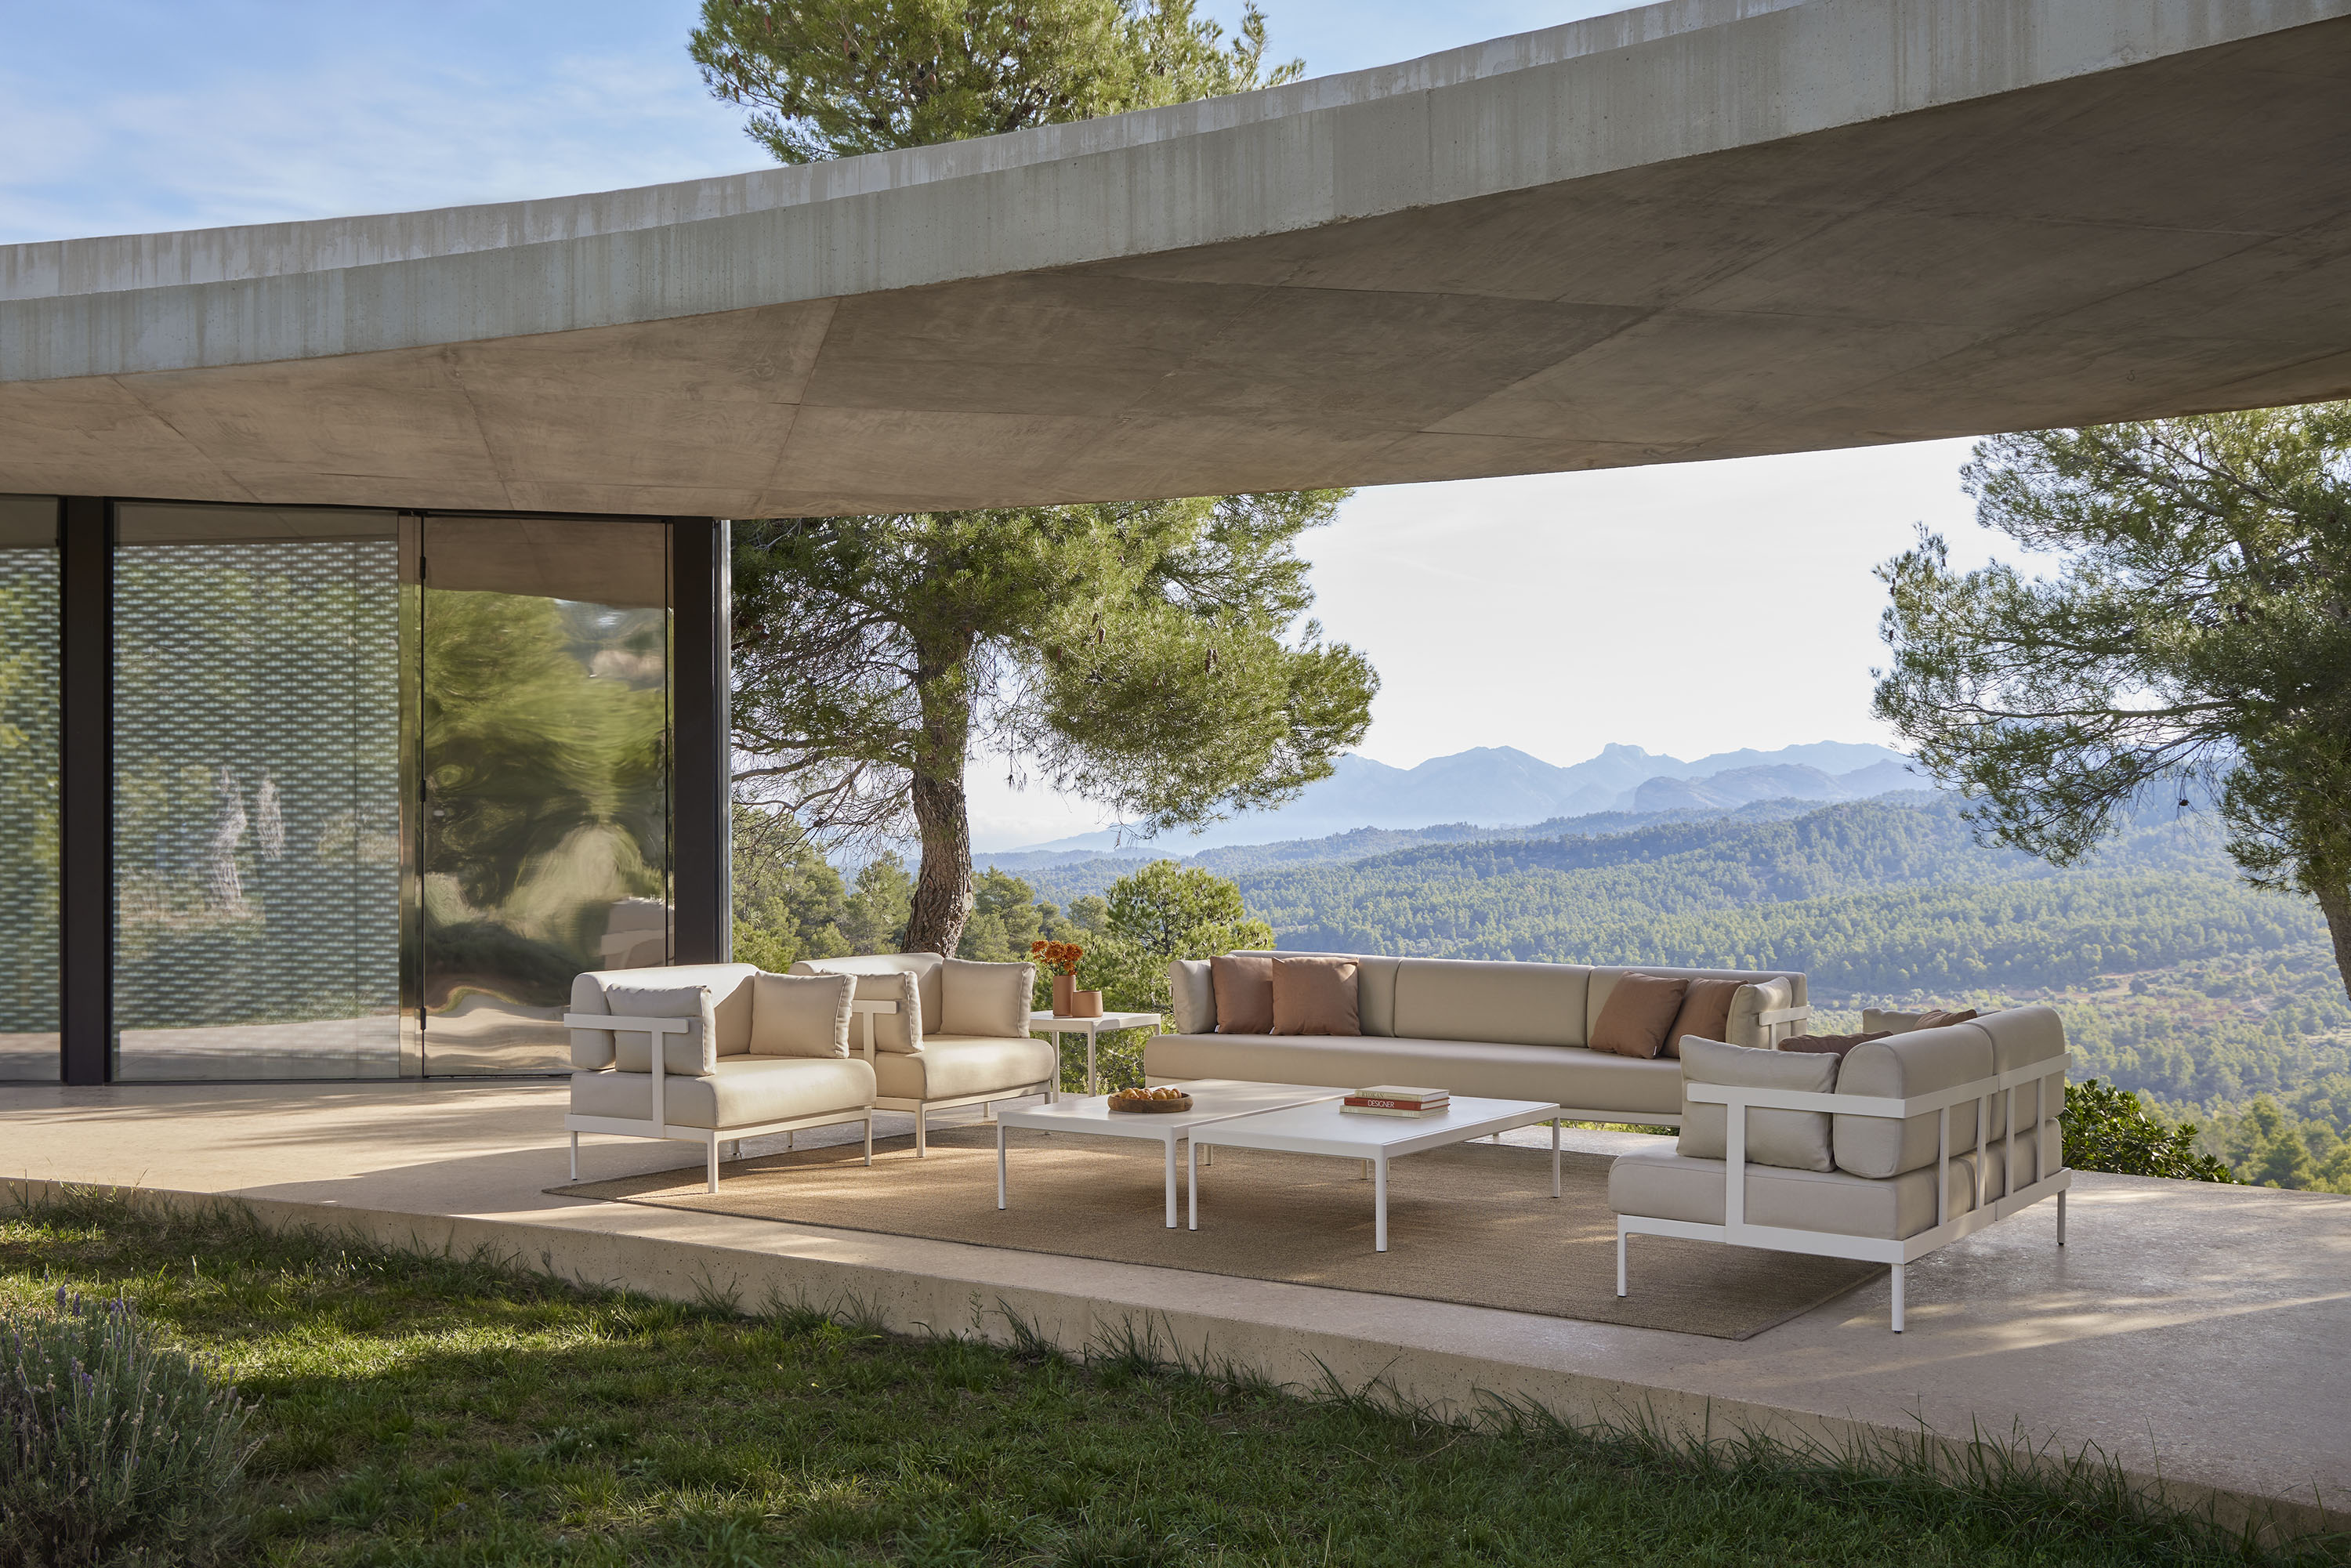  POINT kehrt zum Salone del Mobile in Mailand zurück und präsentiert seine neuen Kollektionen von Gartenmöbeln. Sets, Tische, Stühle, Sofas, Sessel und Liegen.